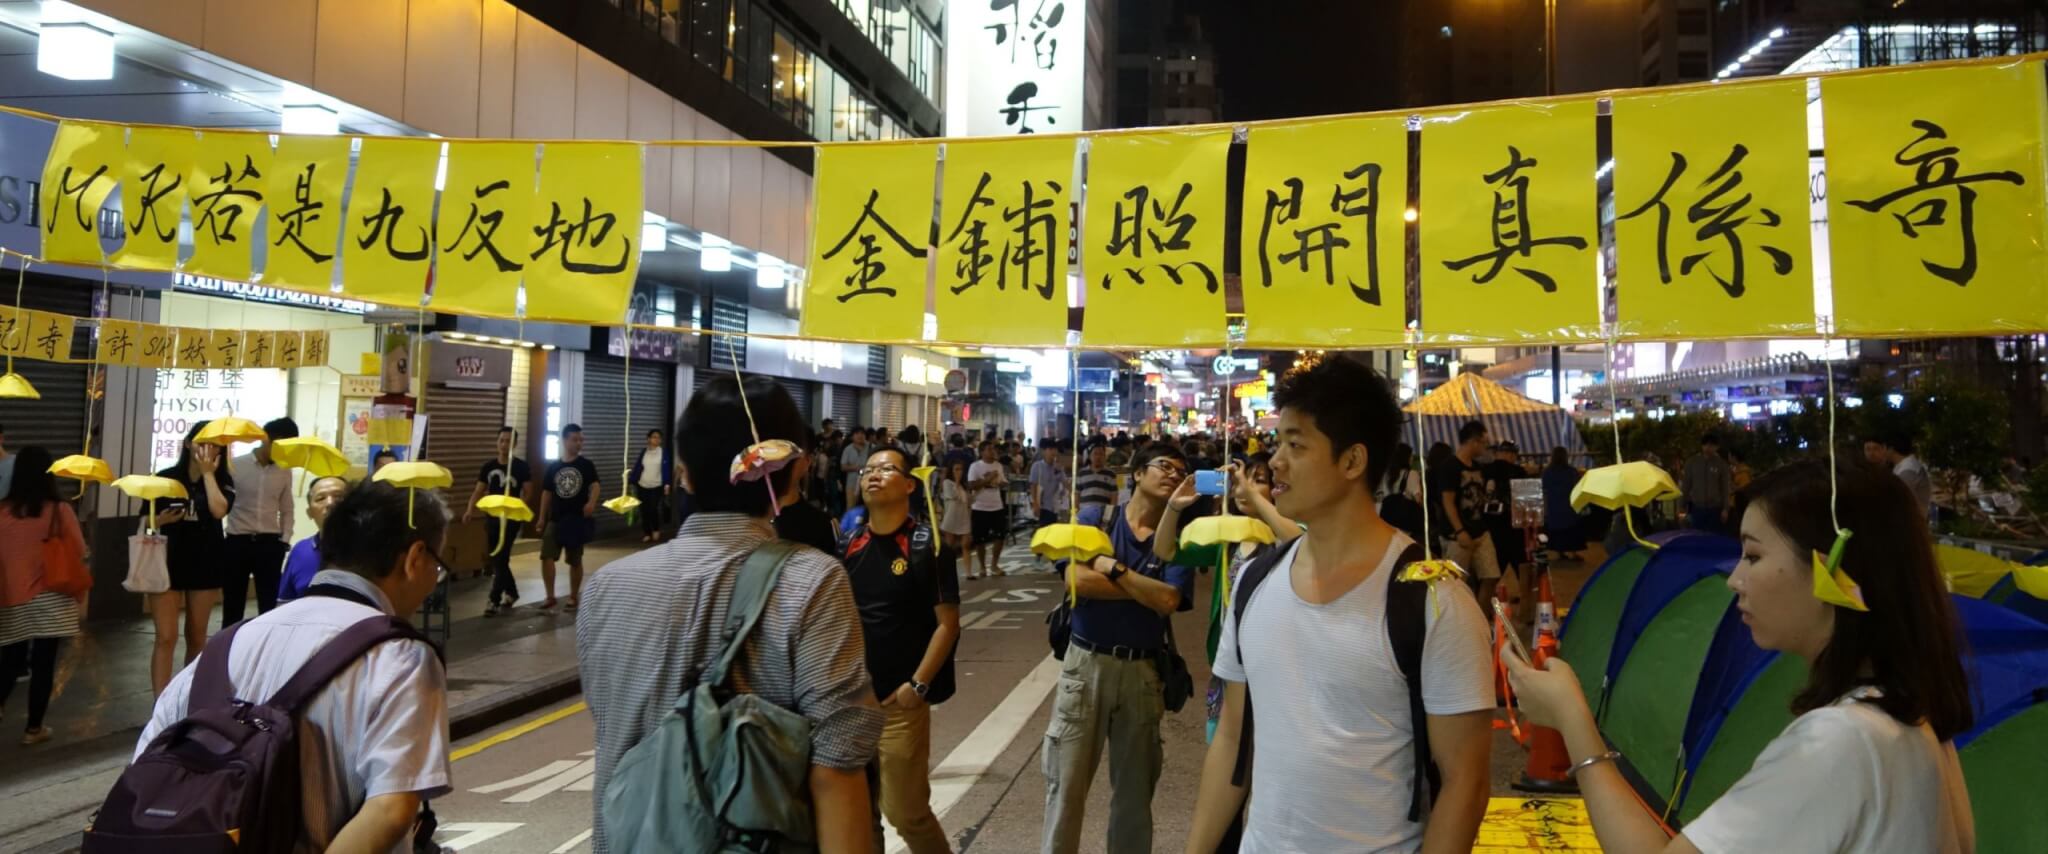 2014年、香港の雨傘運動